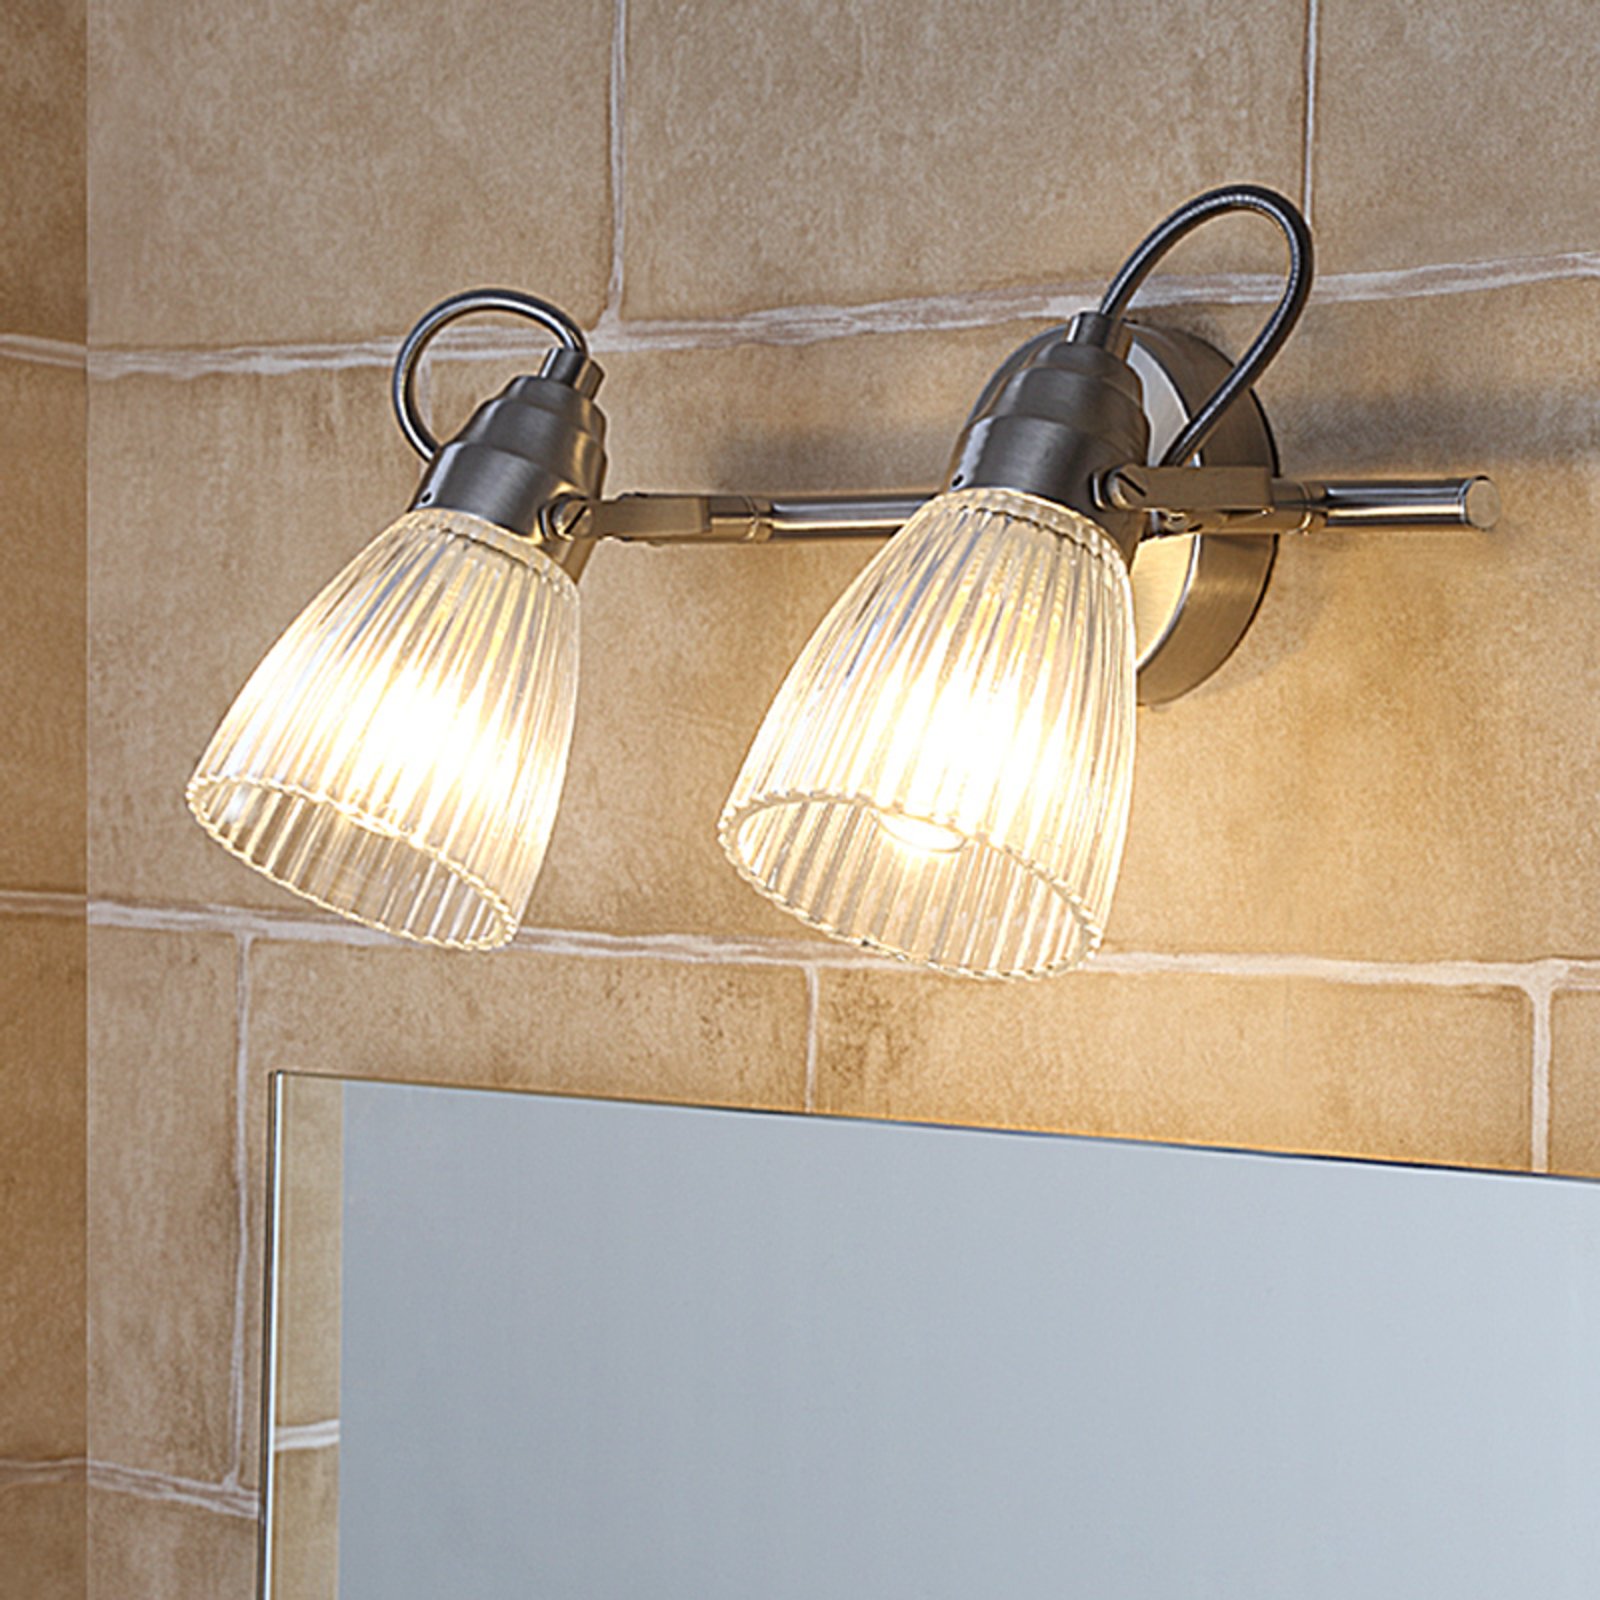 Kara fürdőszobai fali lámpa, két izzós, IP44